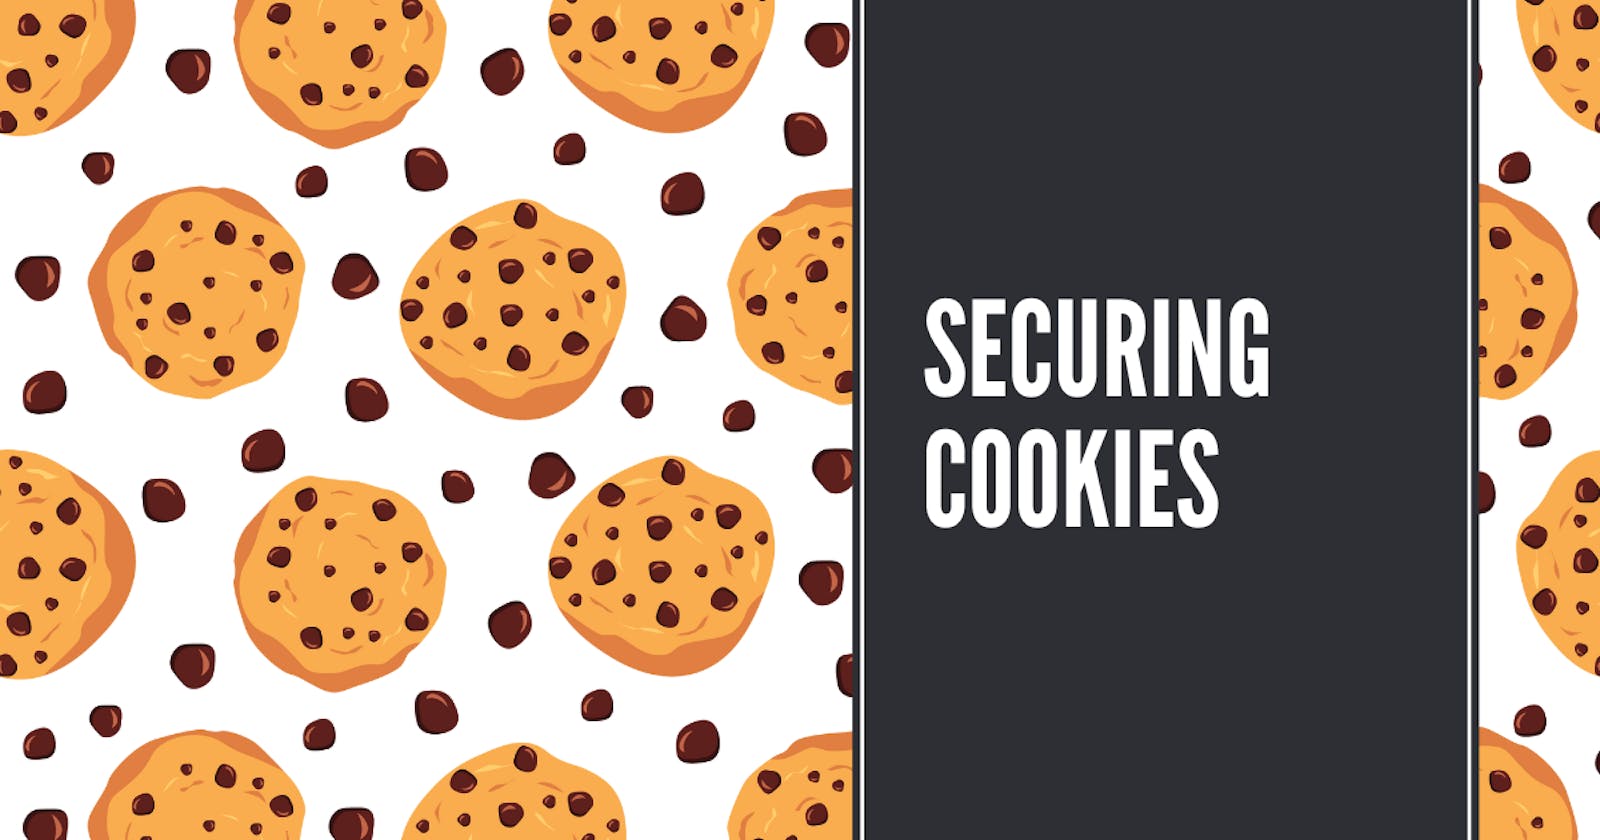 Securing cookies